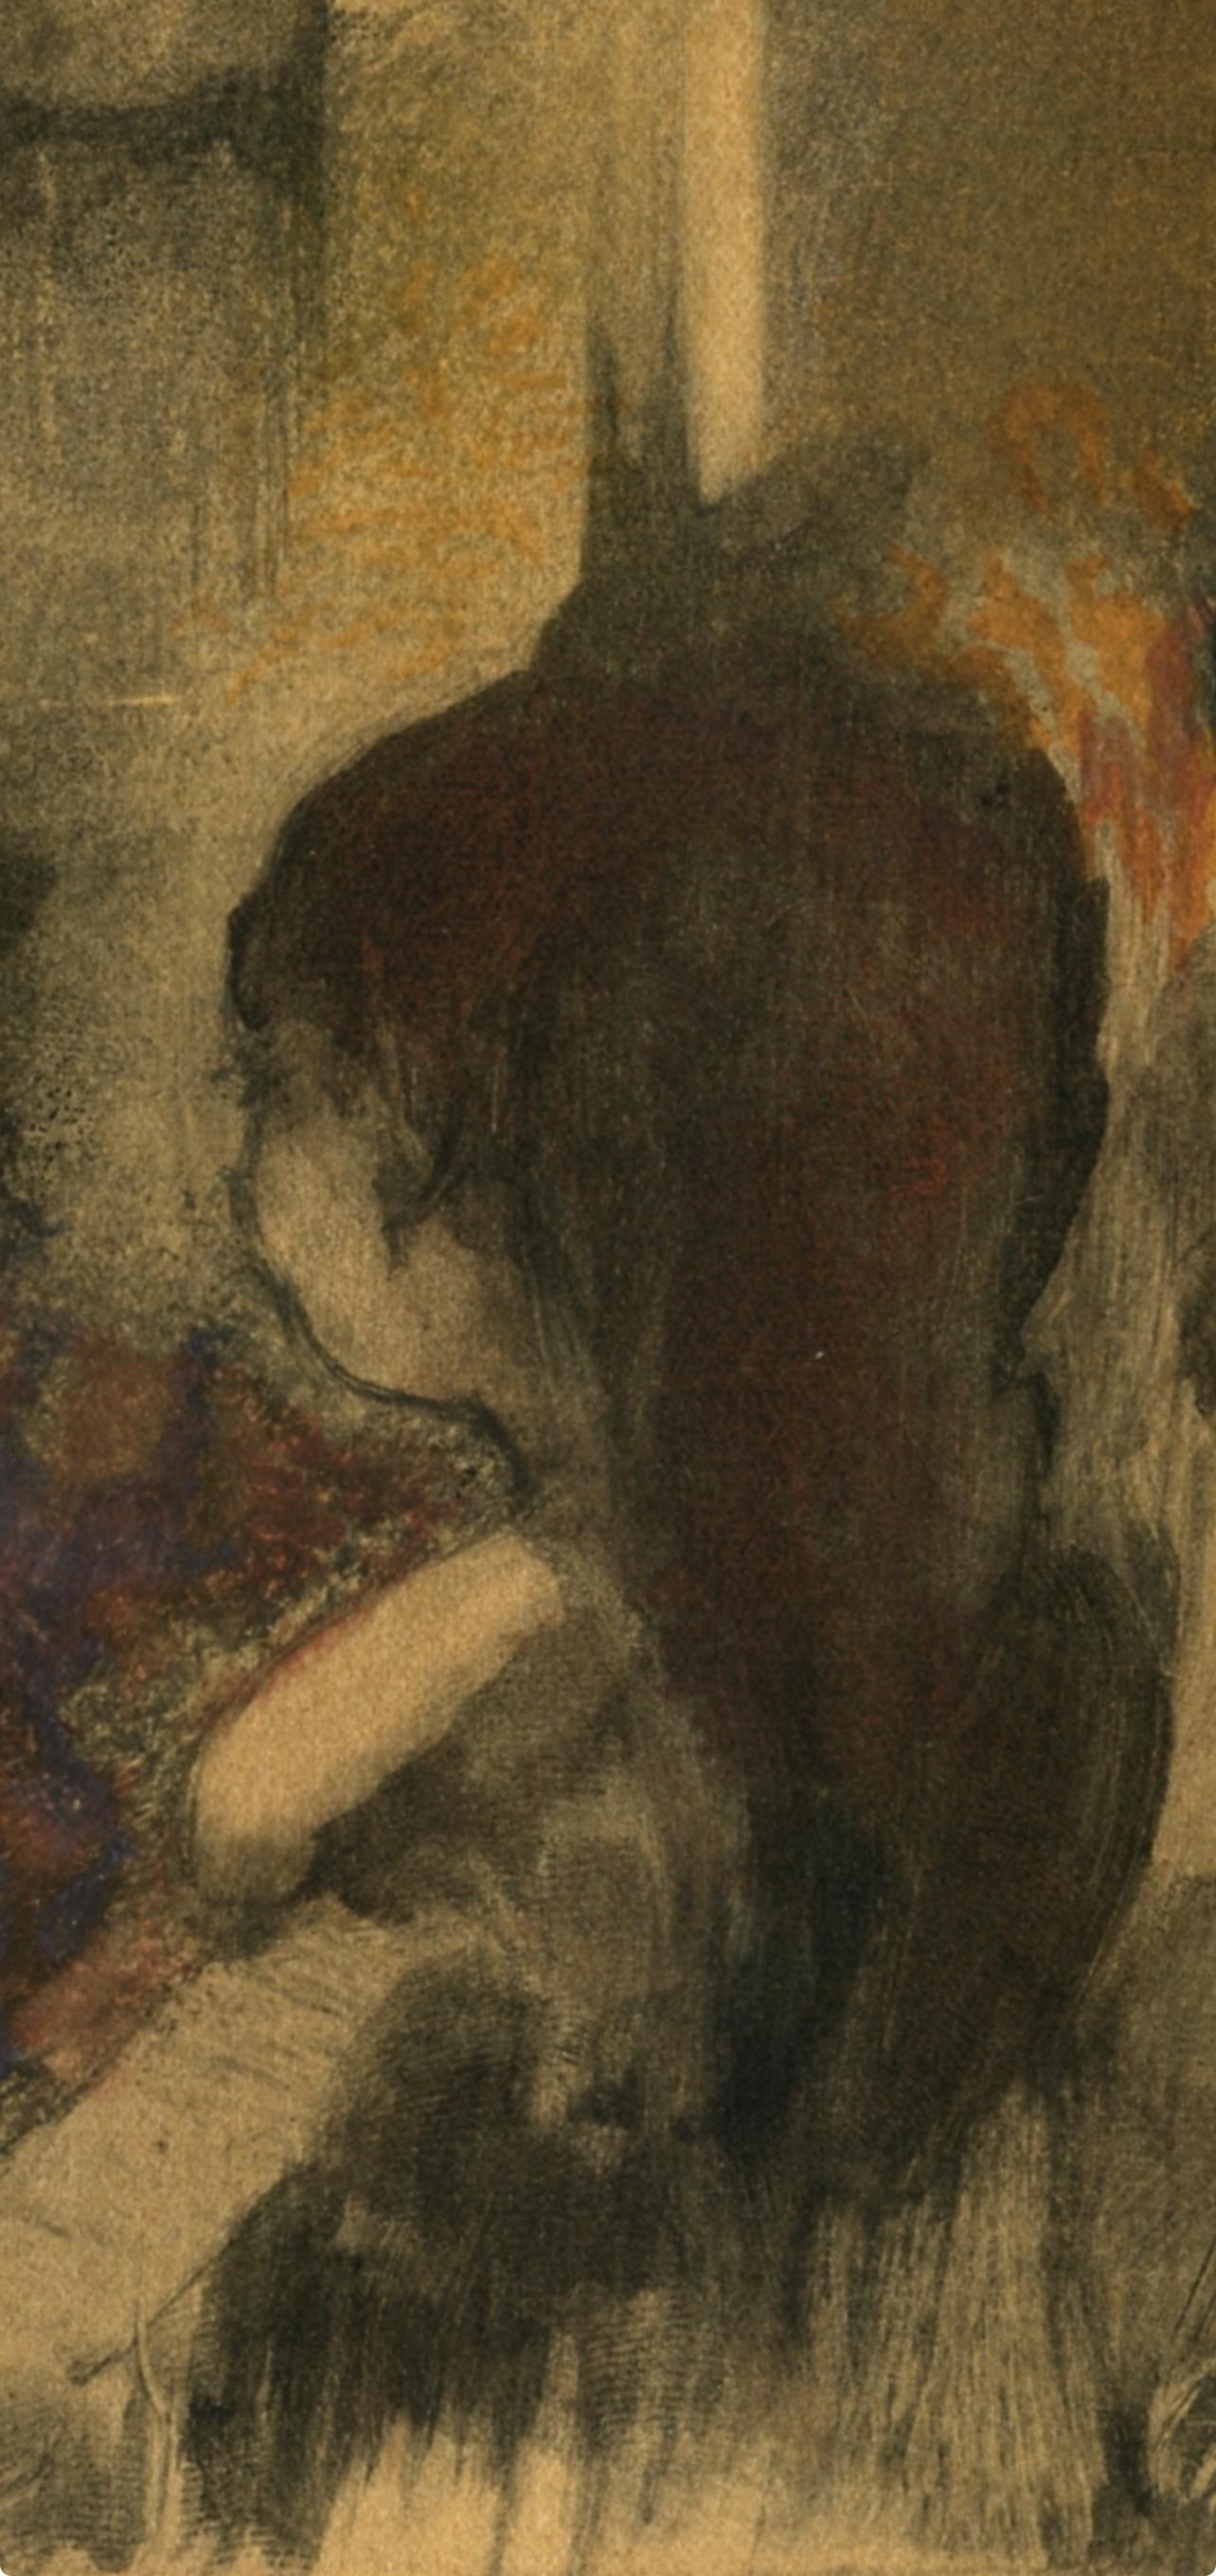 Degas, Trois Femmes de dos, Les Monotypes (after) - Impressionist Print by Edgar Degas